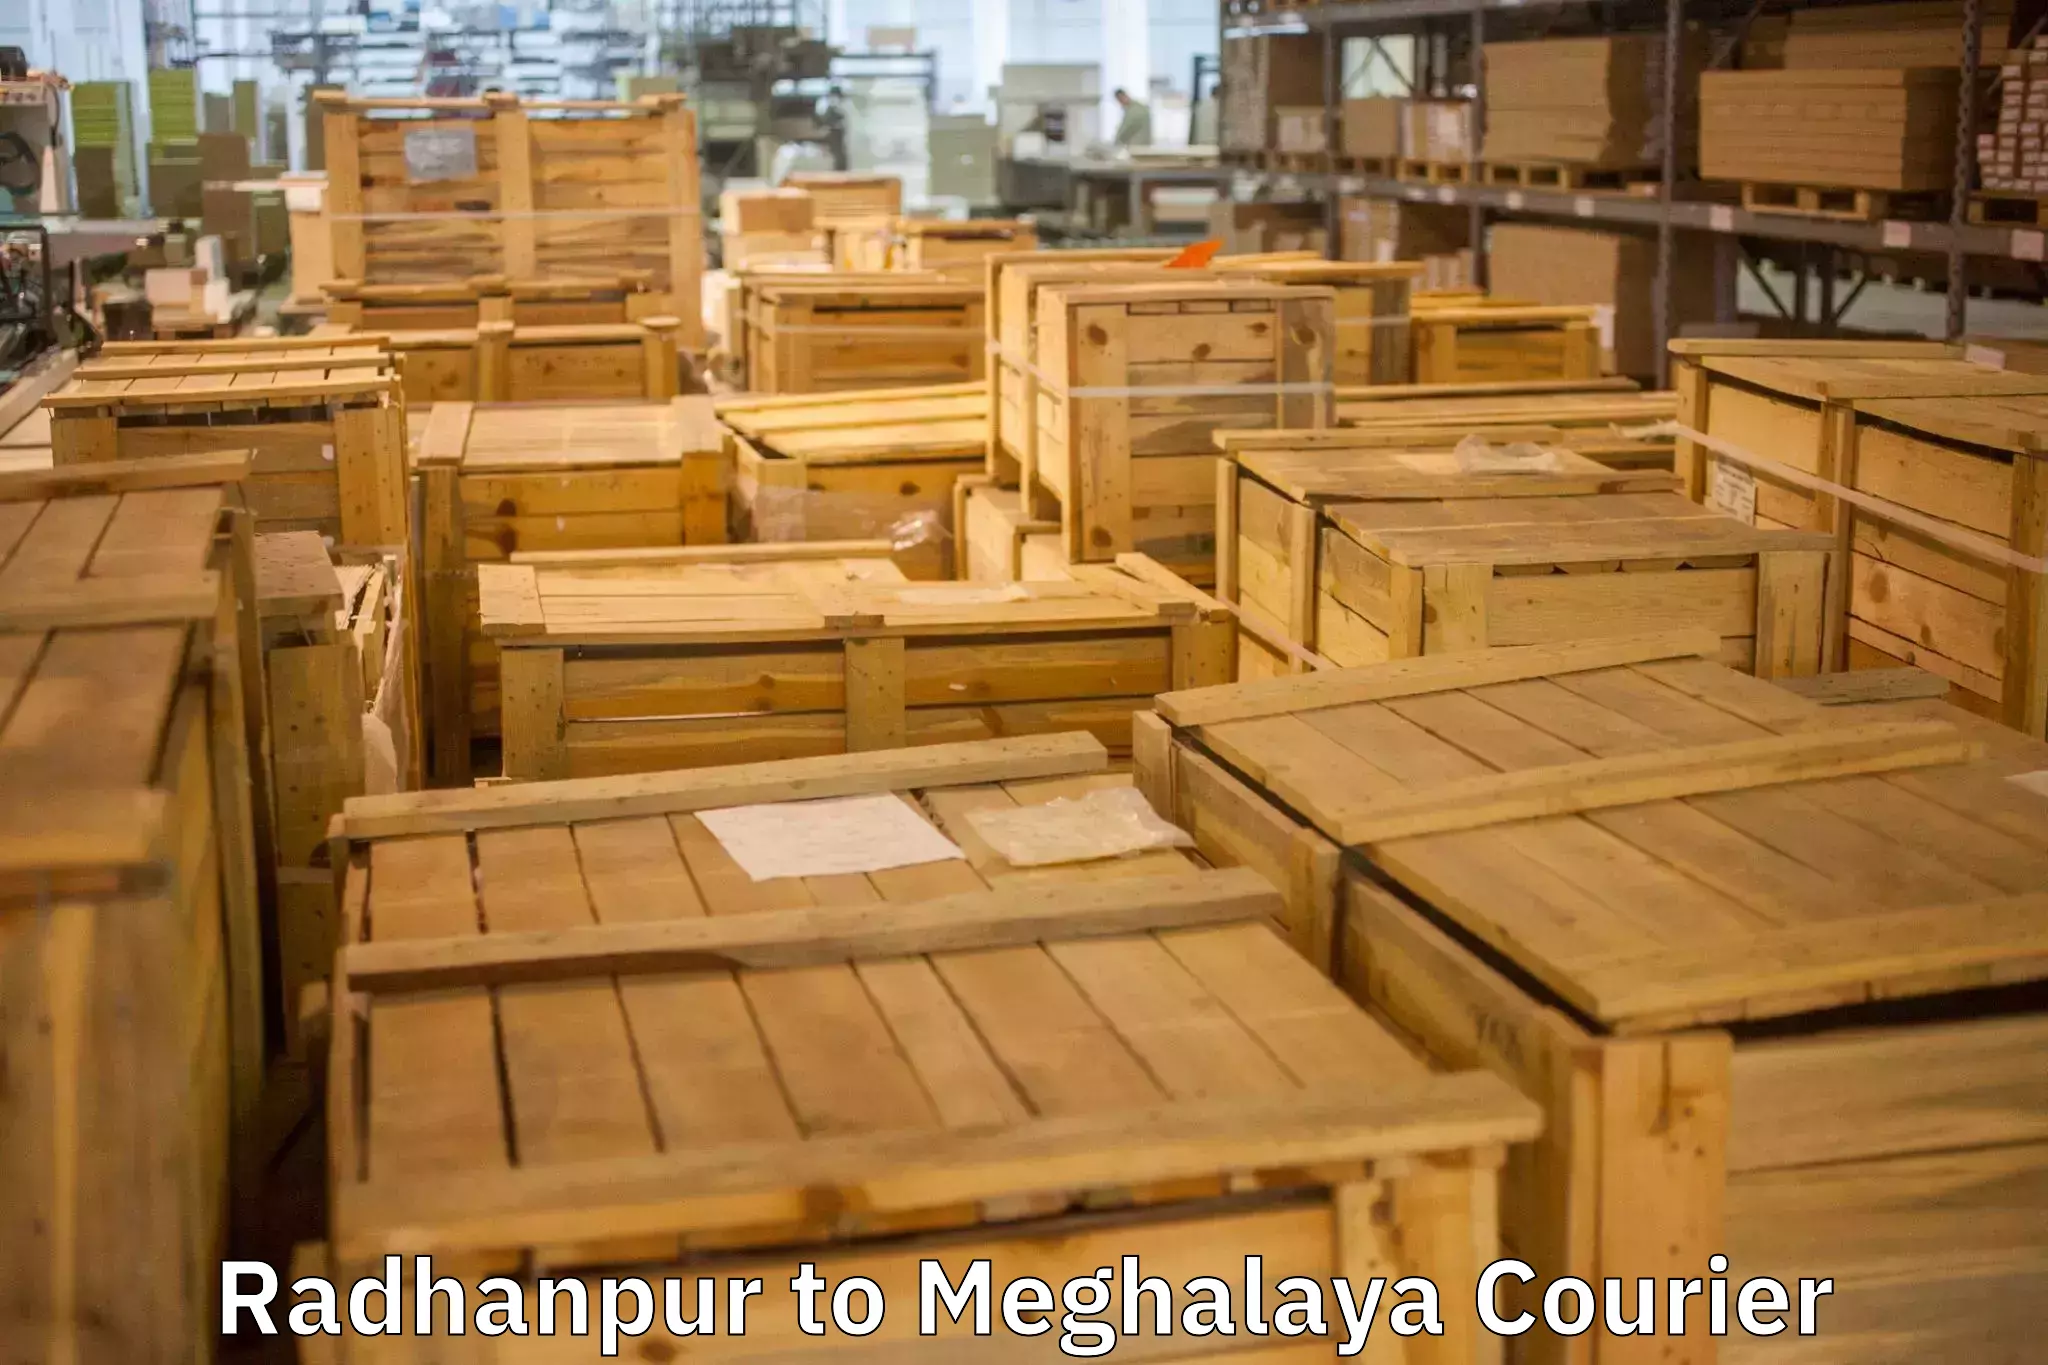 Efficient furniture transport in Radhanpur to Tikrikilla